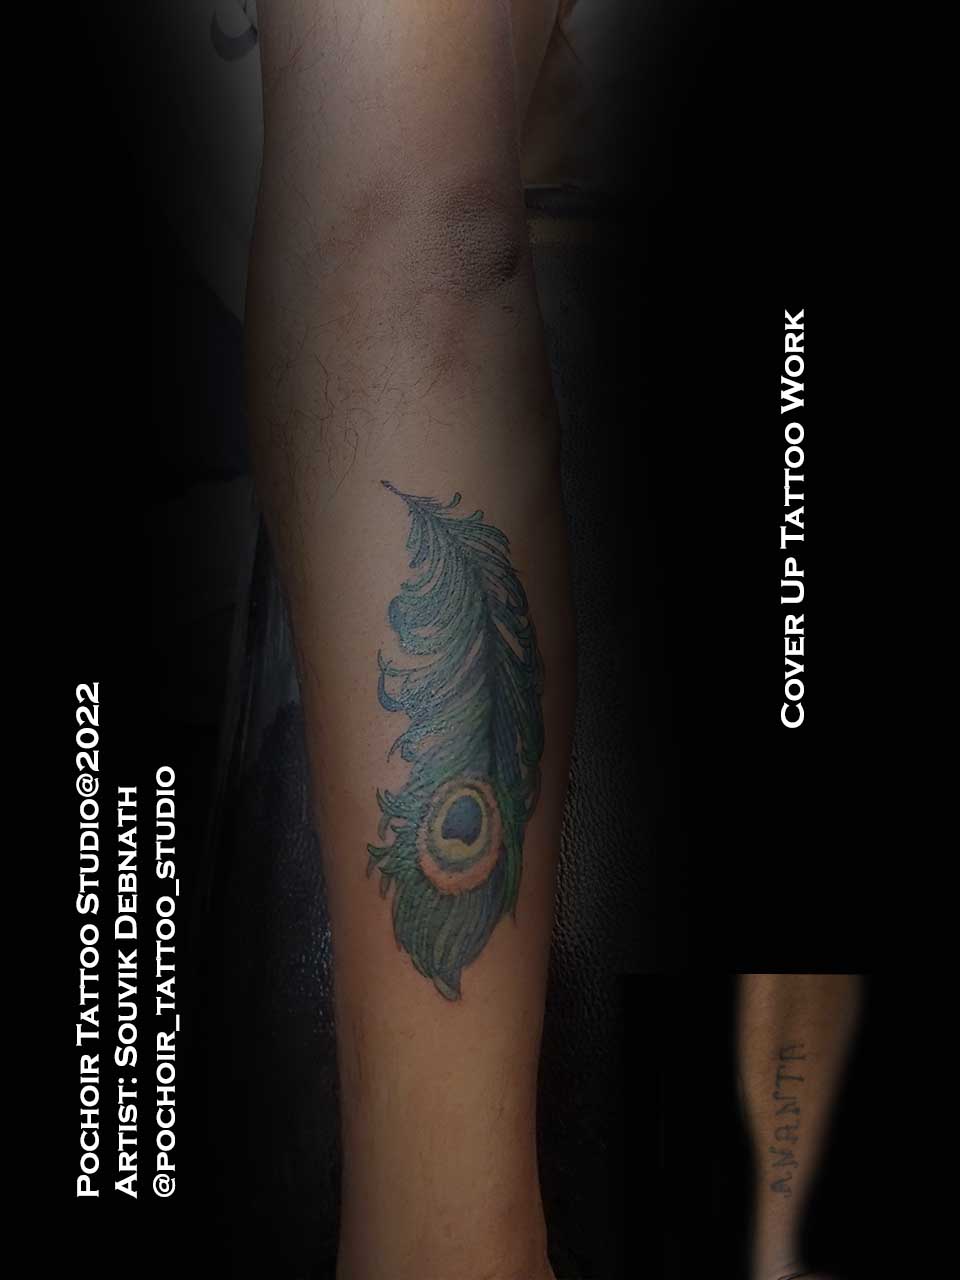 Name tattoo nametattoo tattoo tattoos tattooartist inked  tattooart name ink tattooideas nametattoos smalltattoo art   Instagram